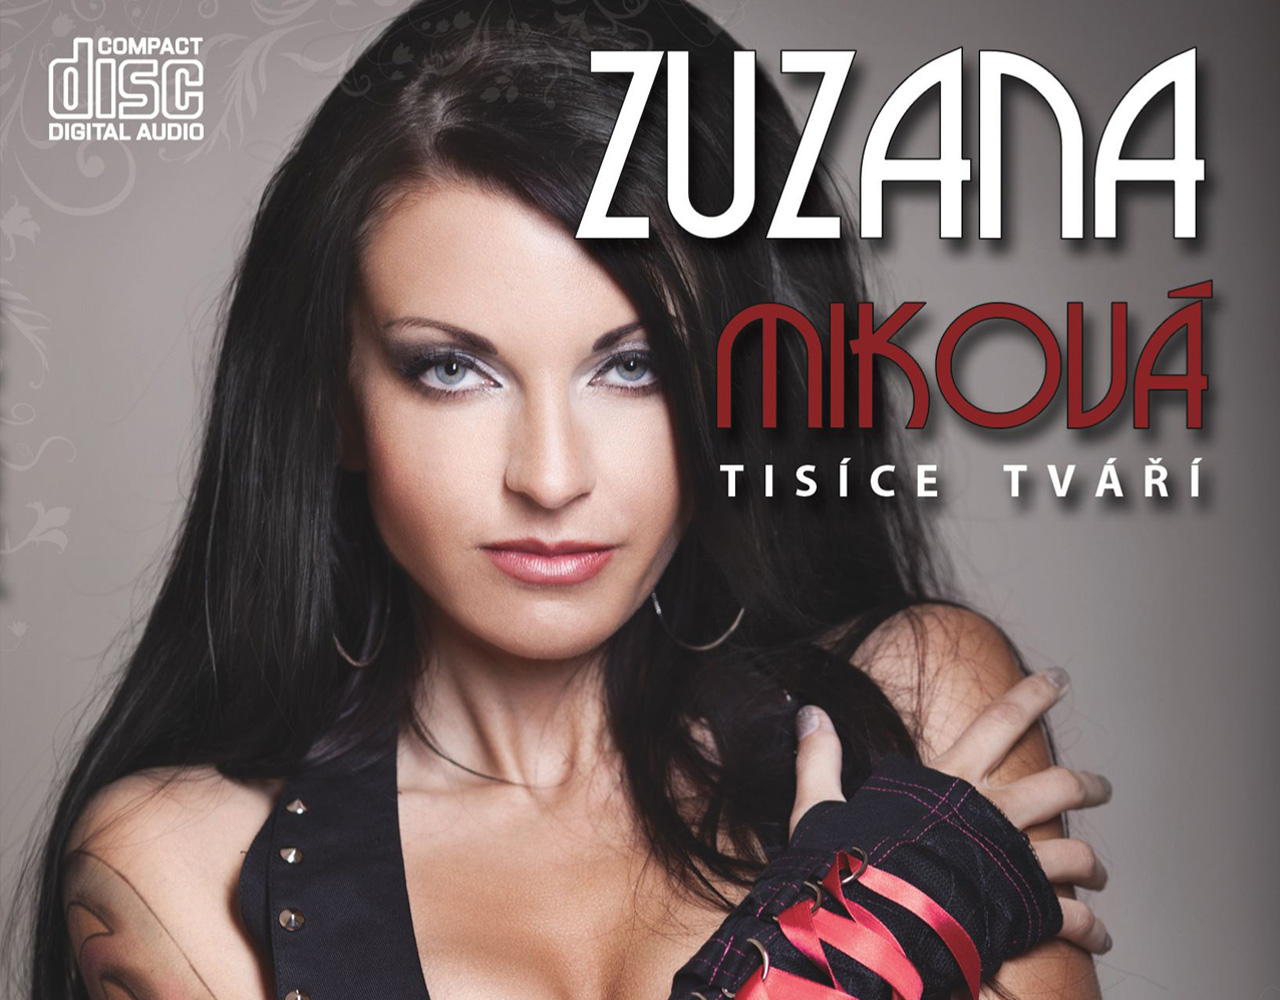 Tisíce tváří – Czech album